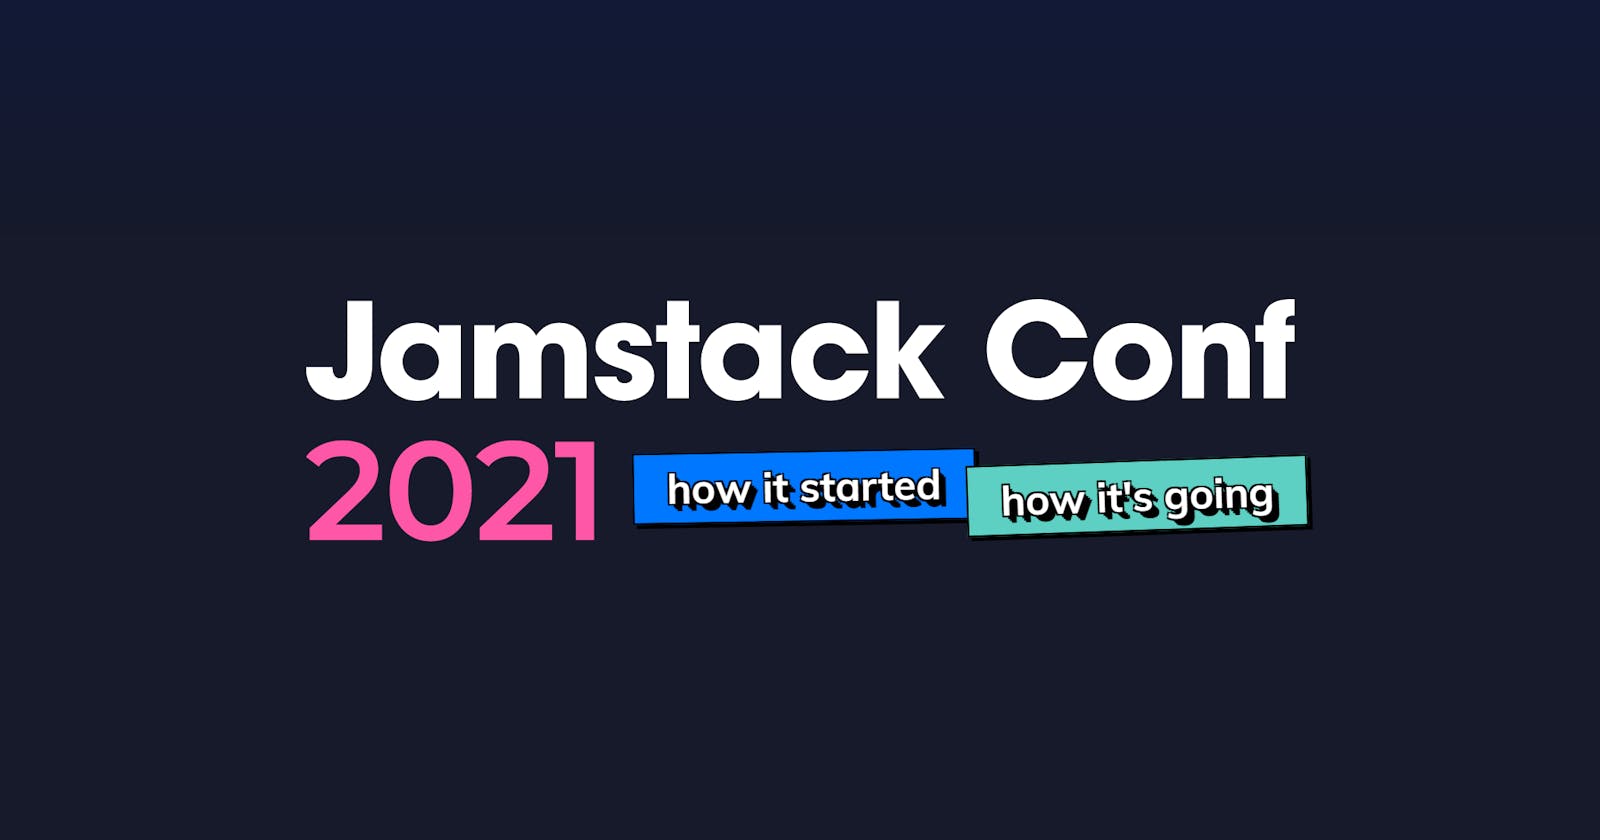 Jamstack Conf 2021